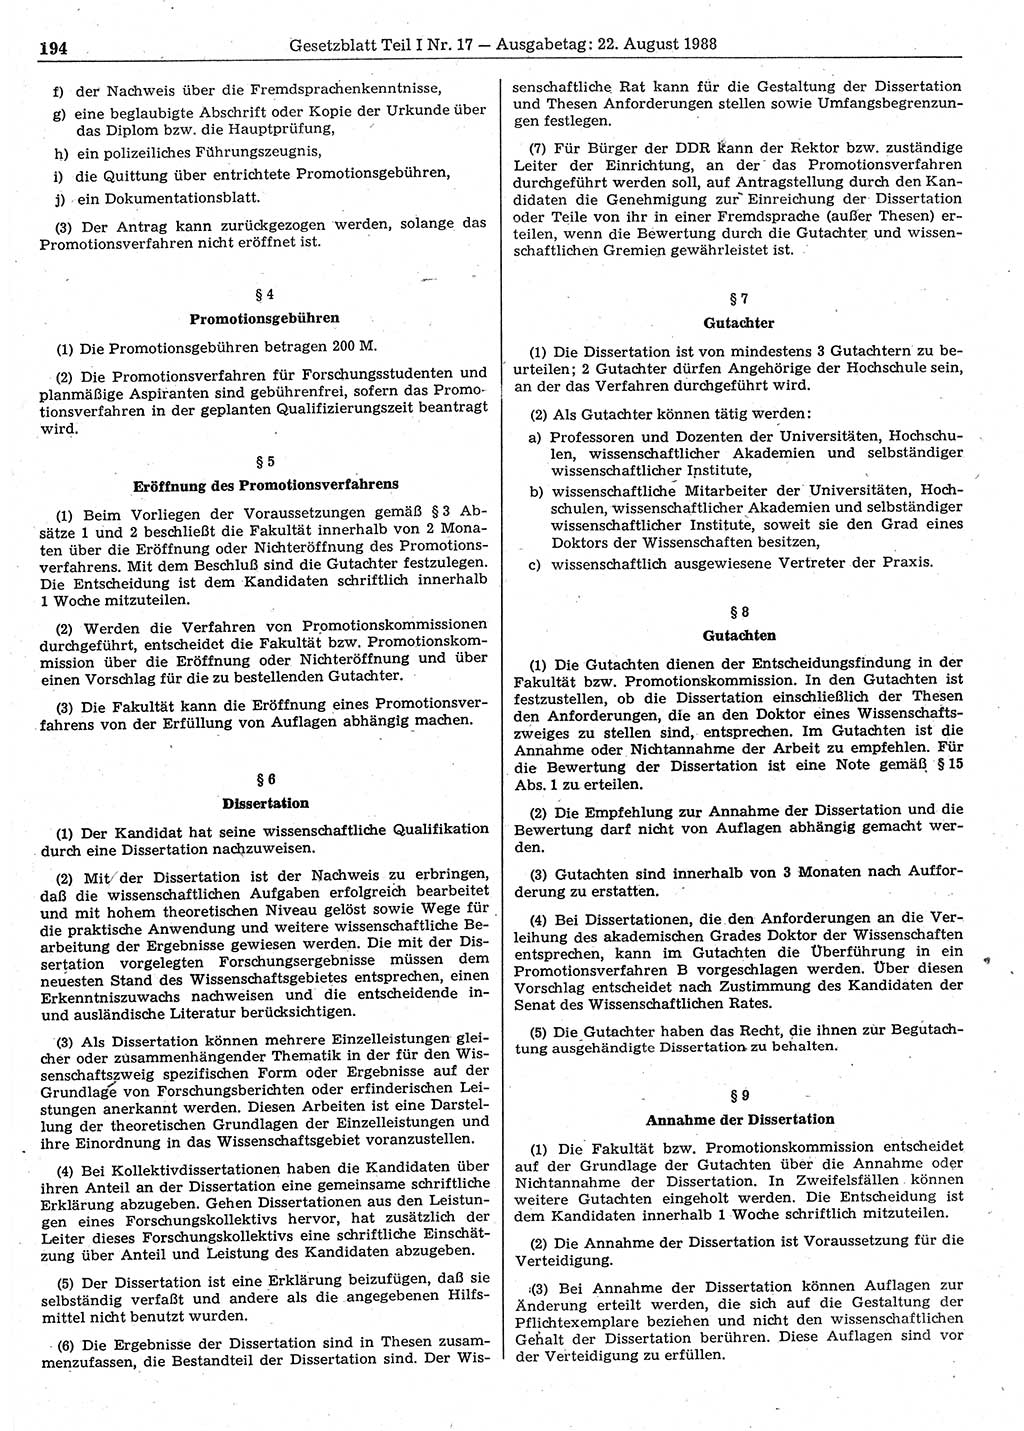 Gesetzblatt (GBl.) der Deutschen Demokratischen Republik (DDR) Teil Ⅰ 1988, Seite 194 (GBl. DDR Ⅰ 1988, S. 194)